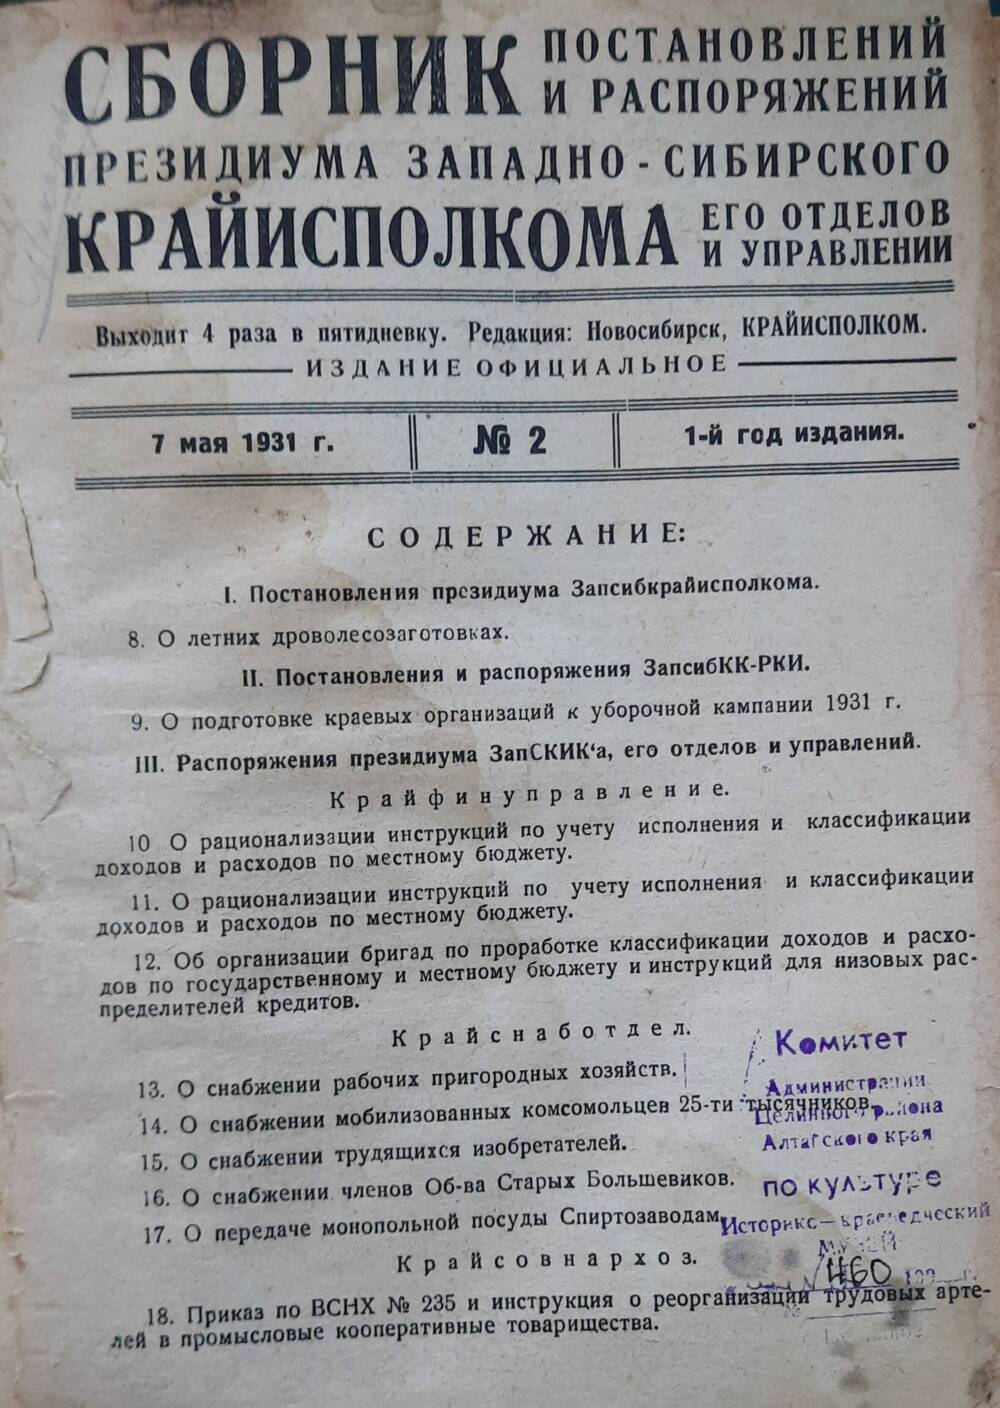 Сборник постановлений президиума Западно-Сибирского крайисполкома, его управлений и отделов 1932 г. с № 1 по №29